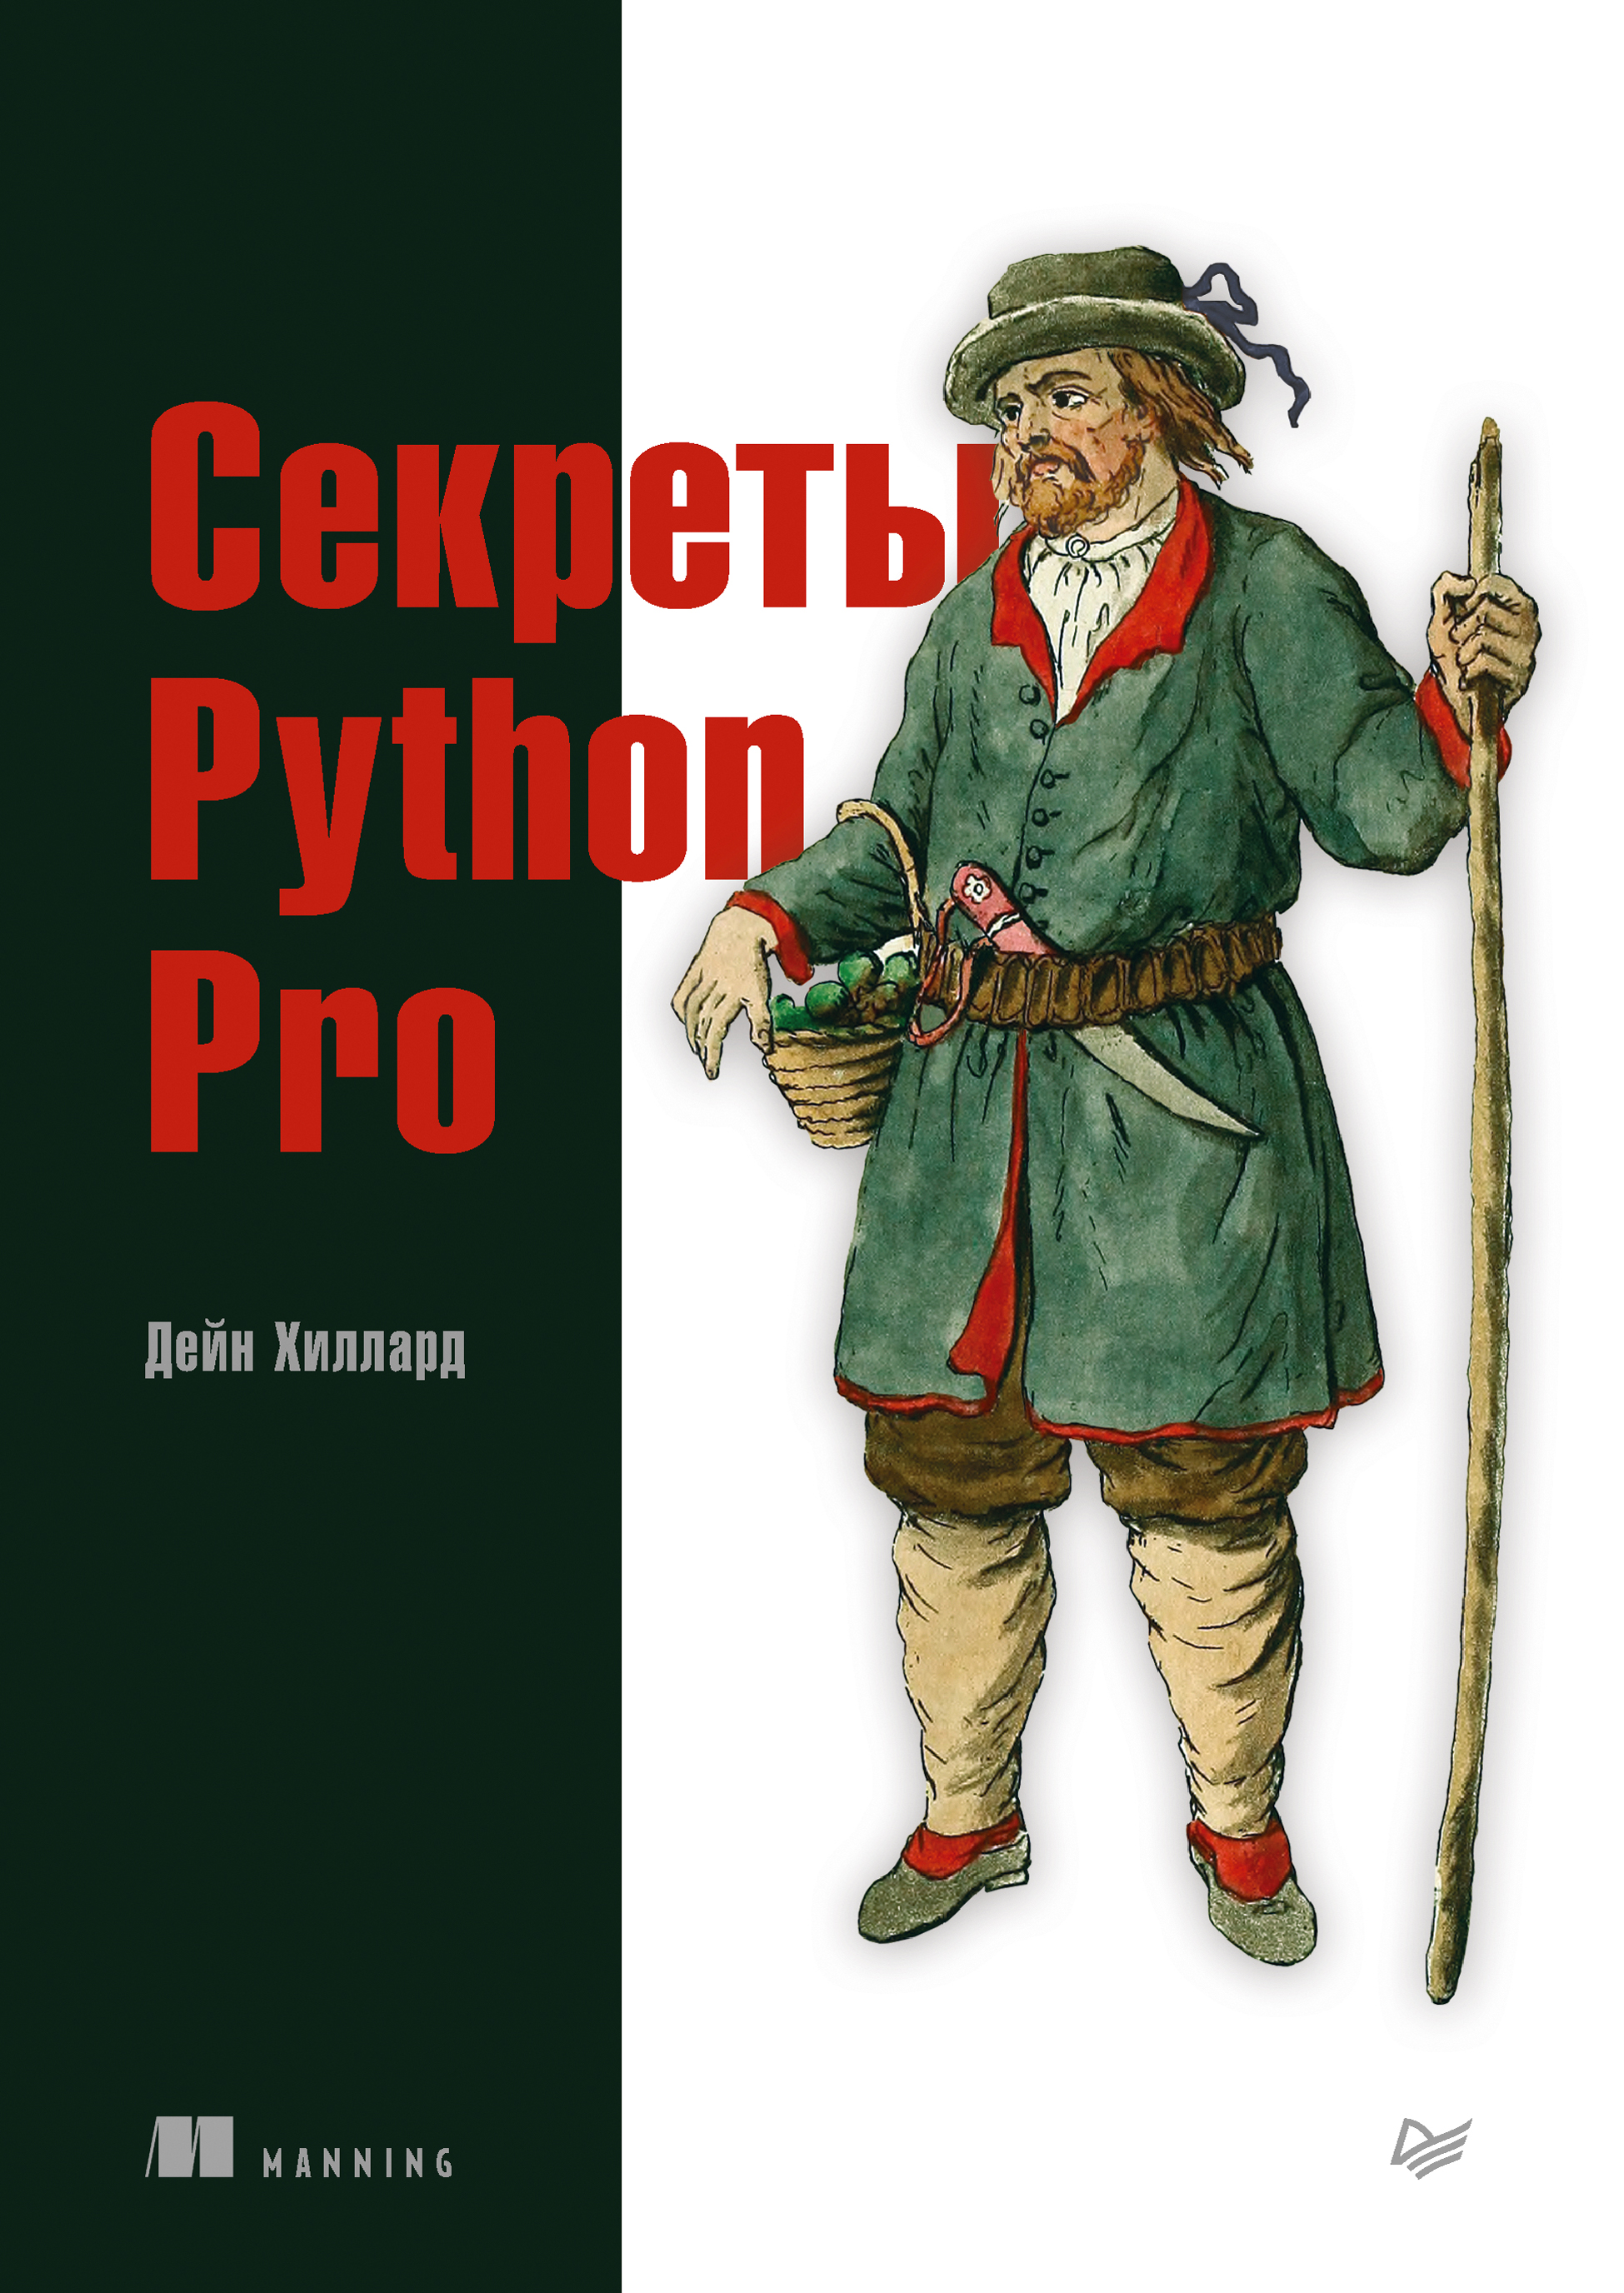 Книга Для профессионалов (Питер) Секреты Python Pro (pdf + epub) созданная Дейн Хиллард, Андрей Логунов может относится к жанру зарубежная компьютерная литература, программирование. Стоимость электронной книги Секреты Python Pro (pdf + epub) с идентификатором 64083647 составляет 699.00 руб.